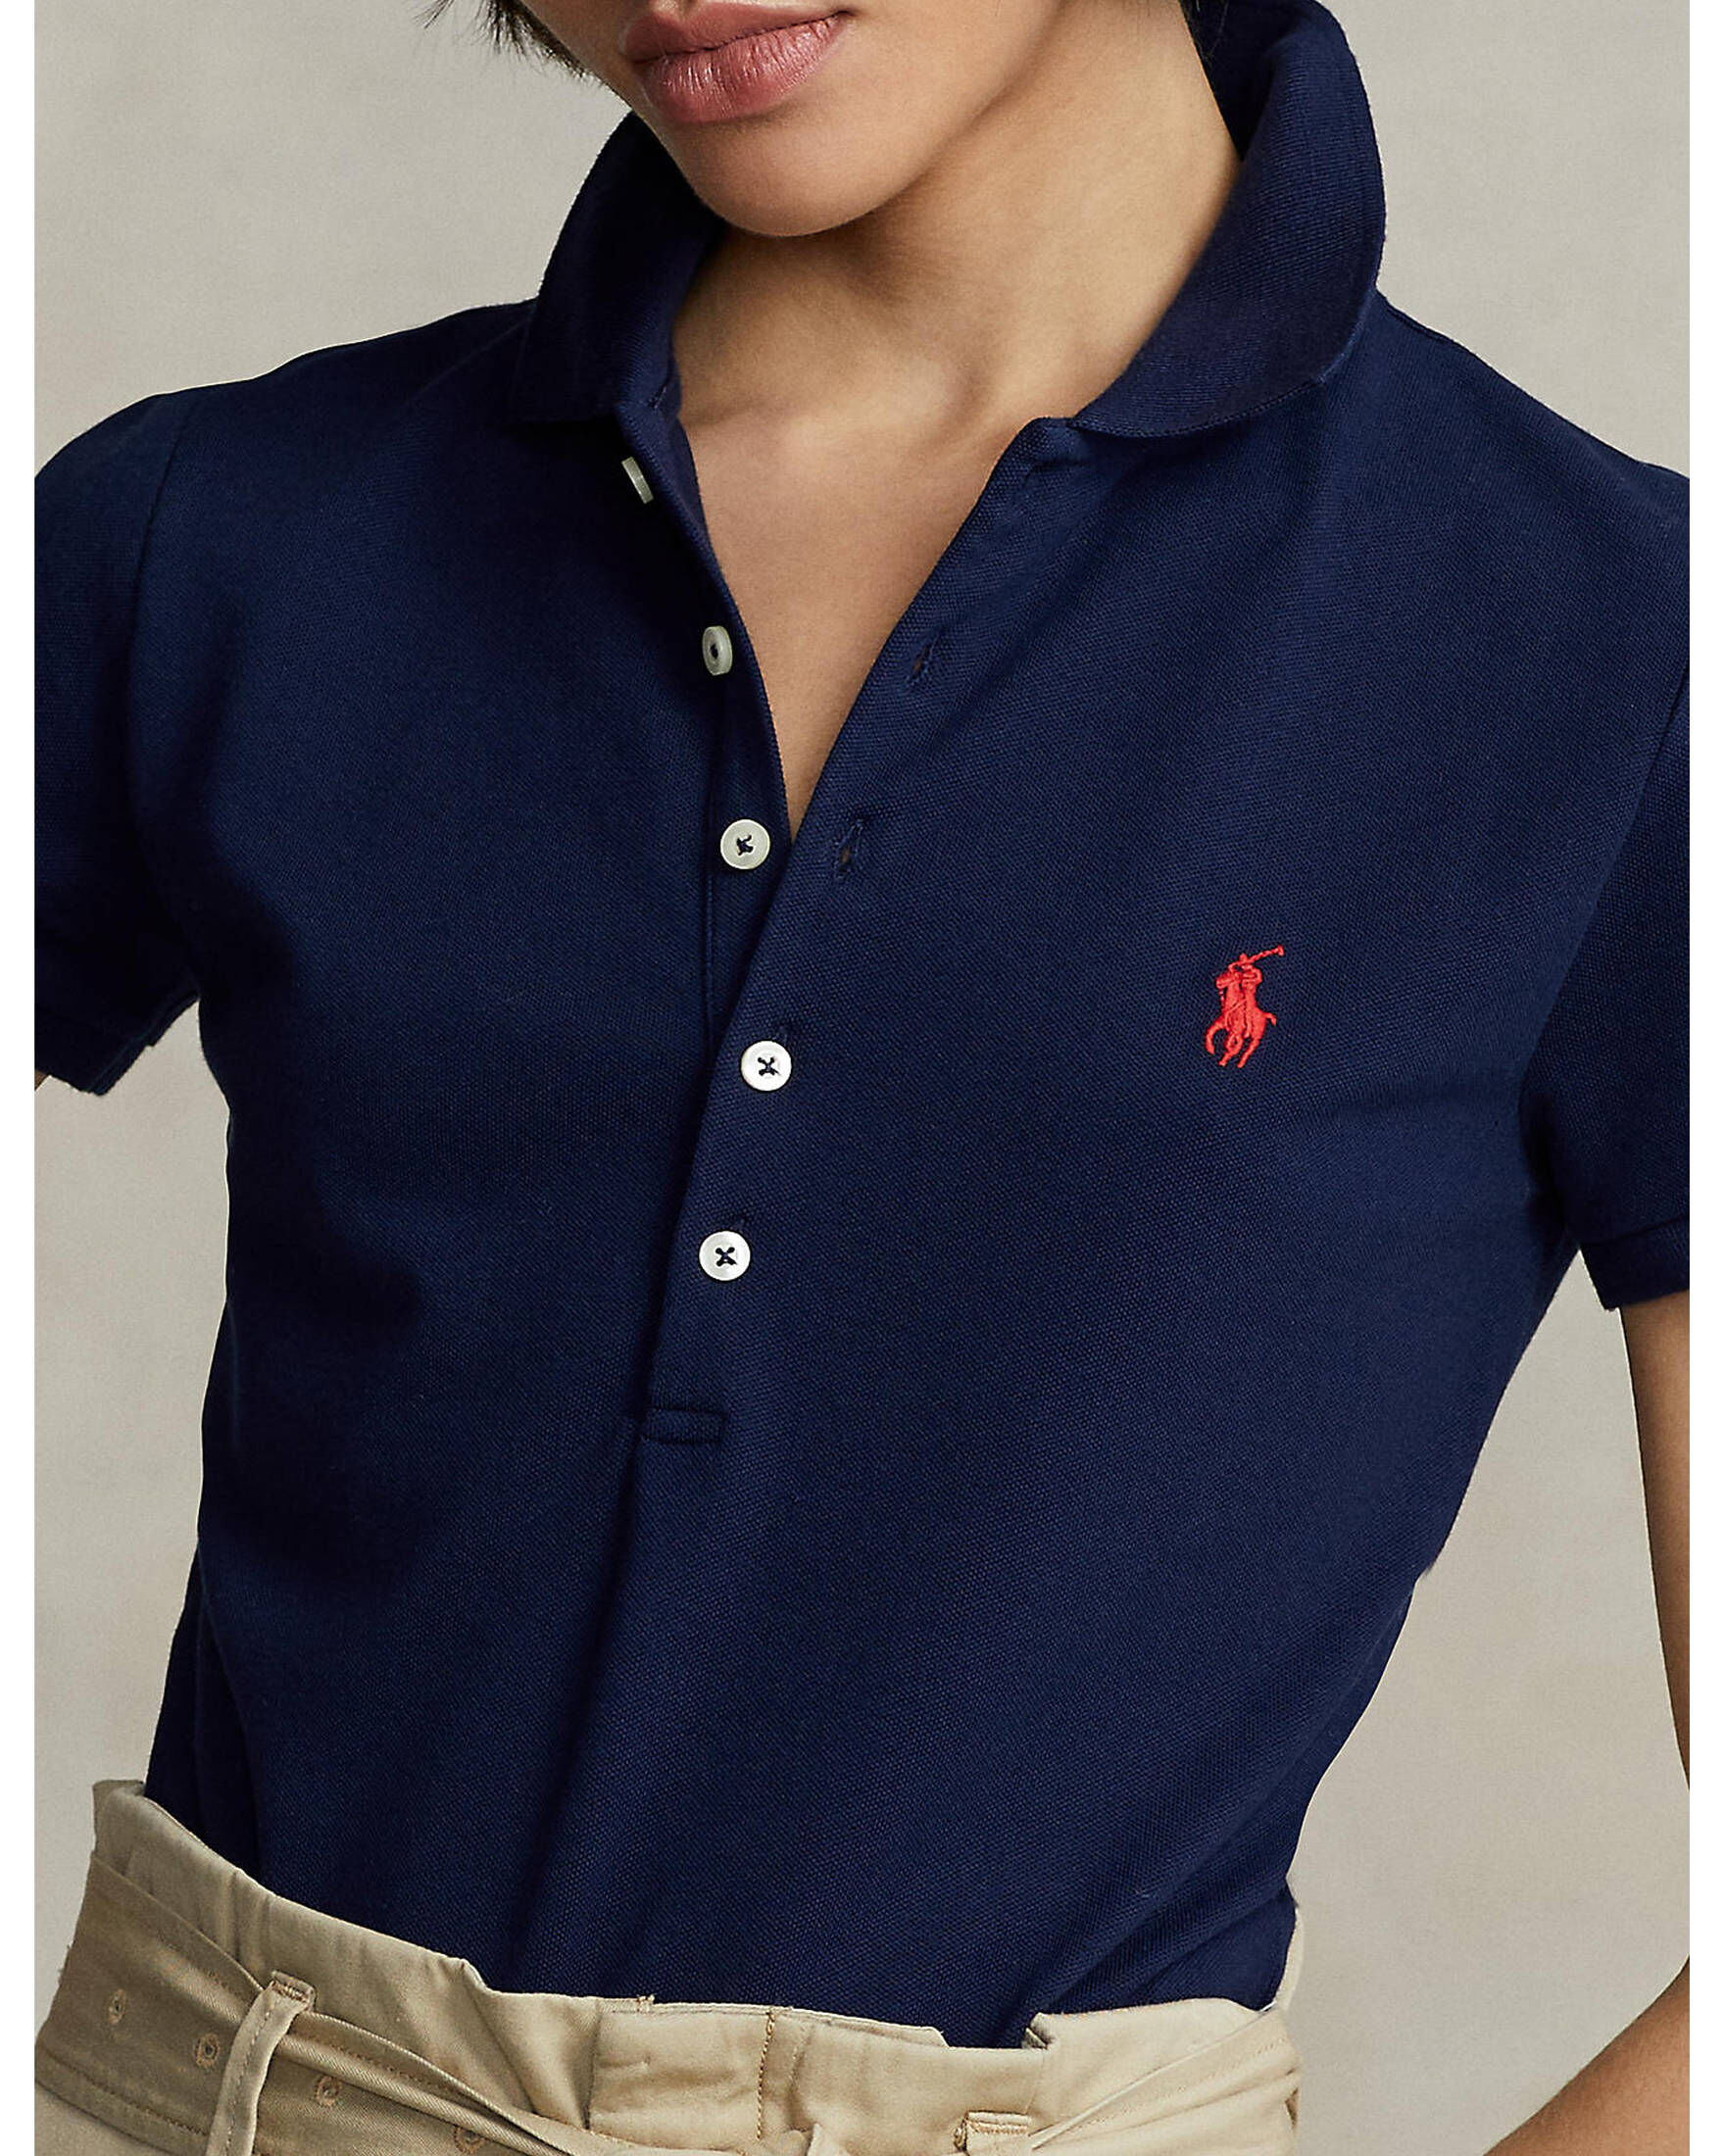 Polo Ralph Lauren Damen Poloshirt Slim Fit kaufen | engelhorn